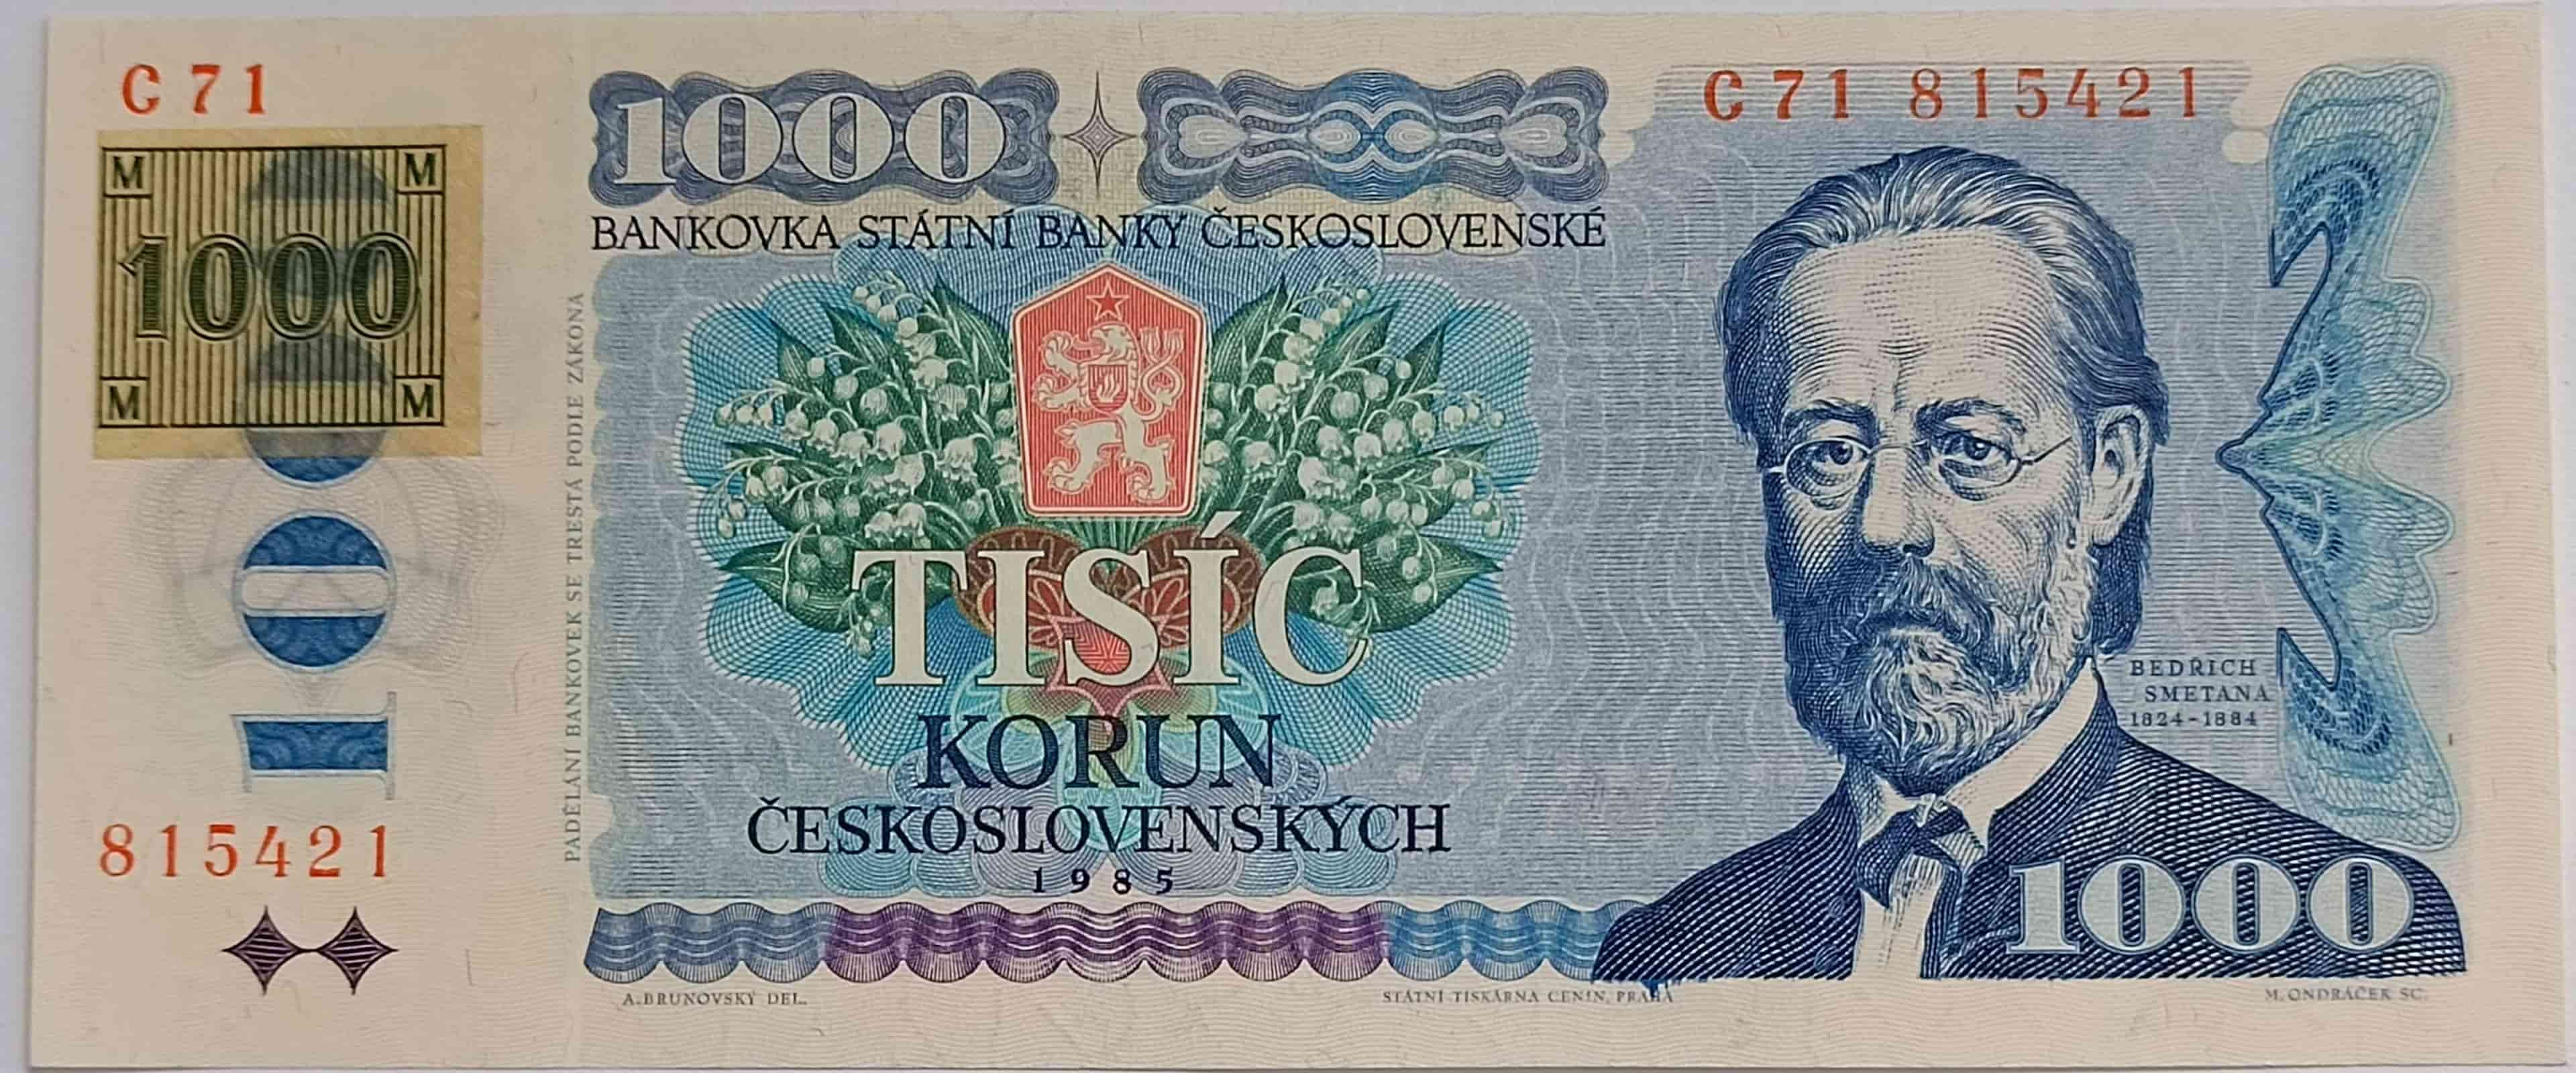 1000 Kčs 1985 C71 ČR kolok lepený